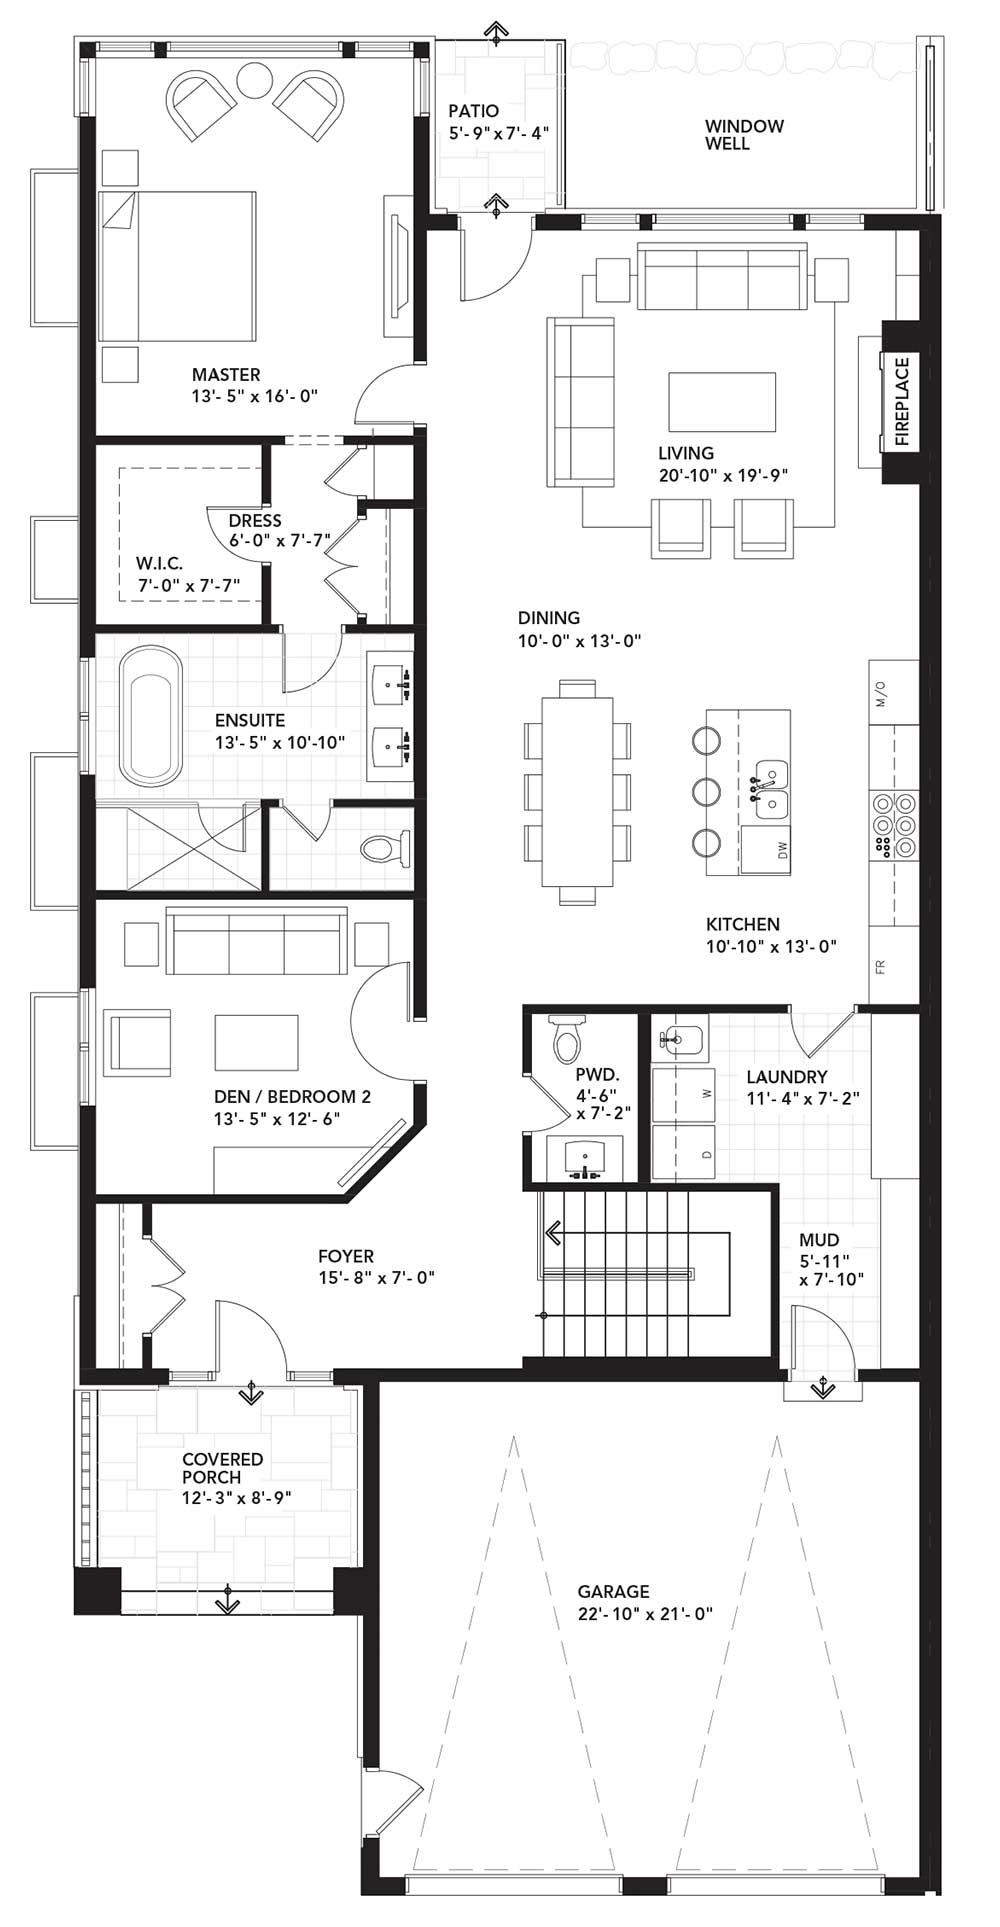 Main Floor Plan - Two Bedroom - Left Unit